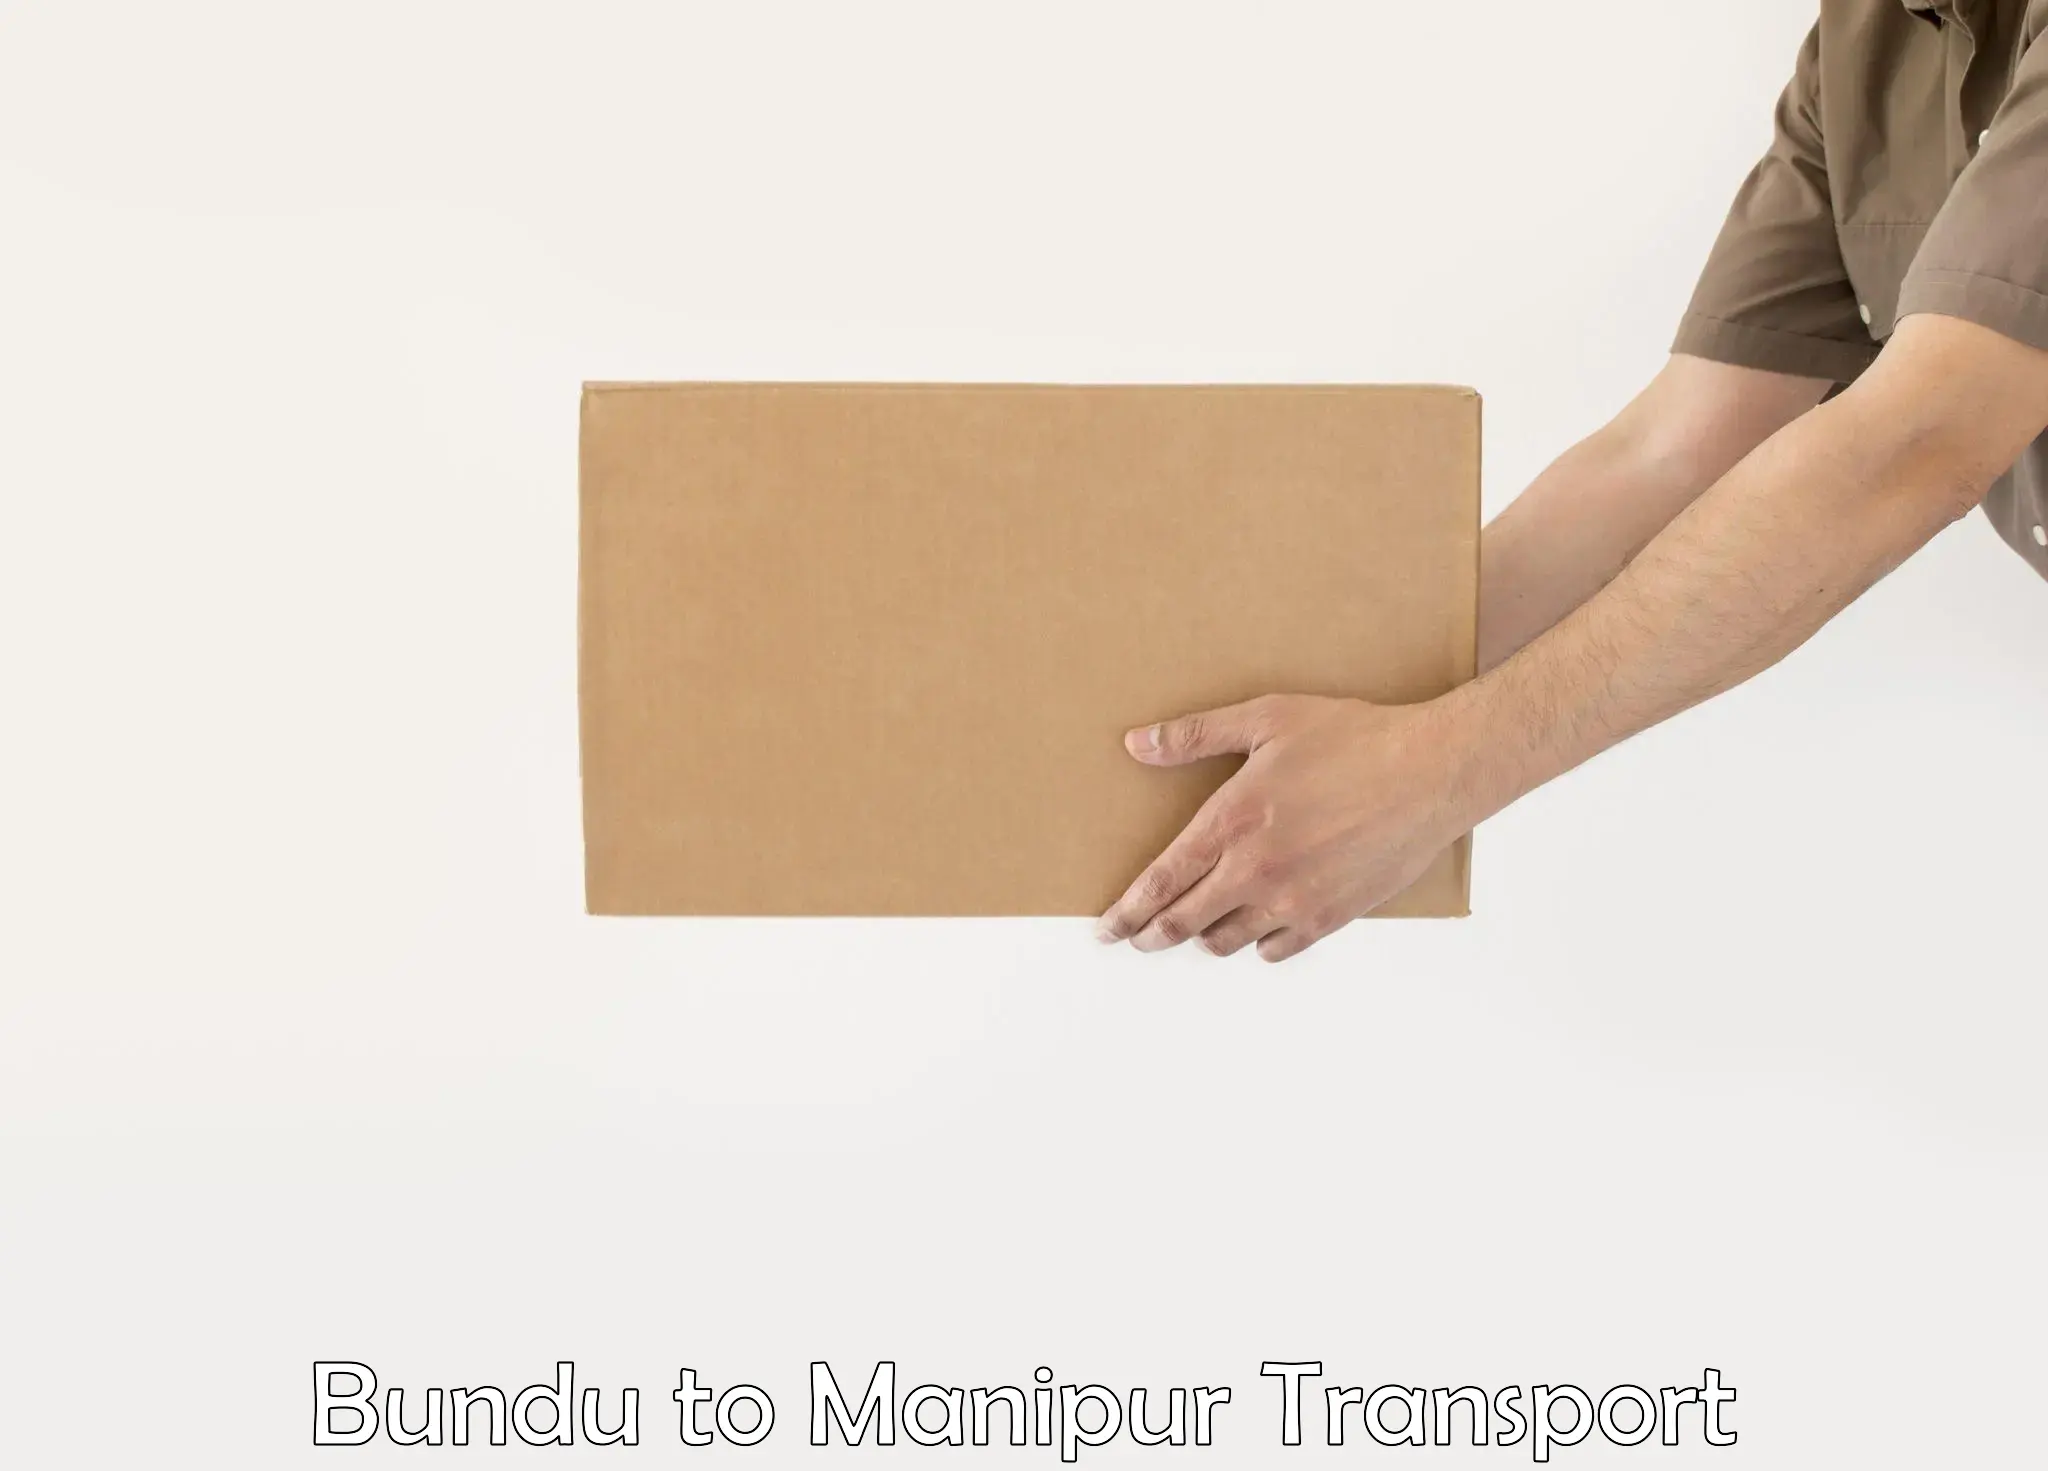 Furniture transport service Bundu to Manipur